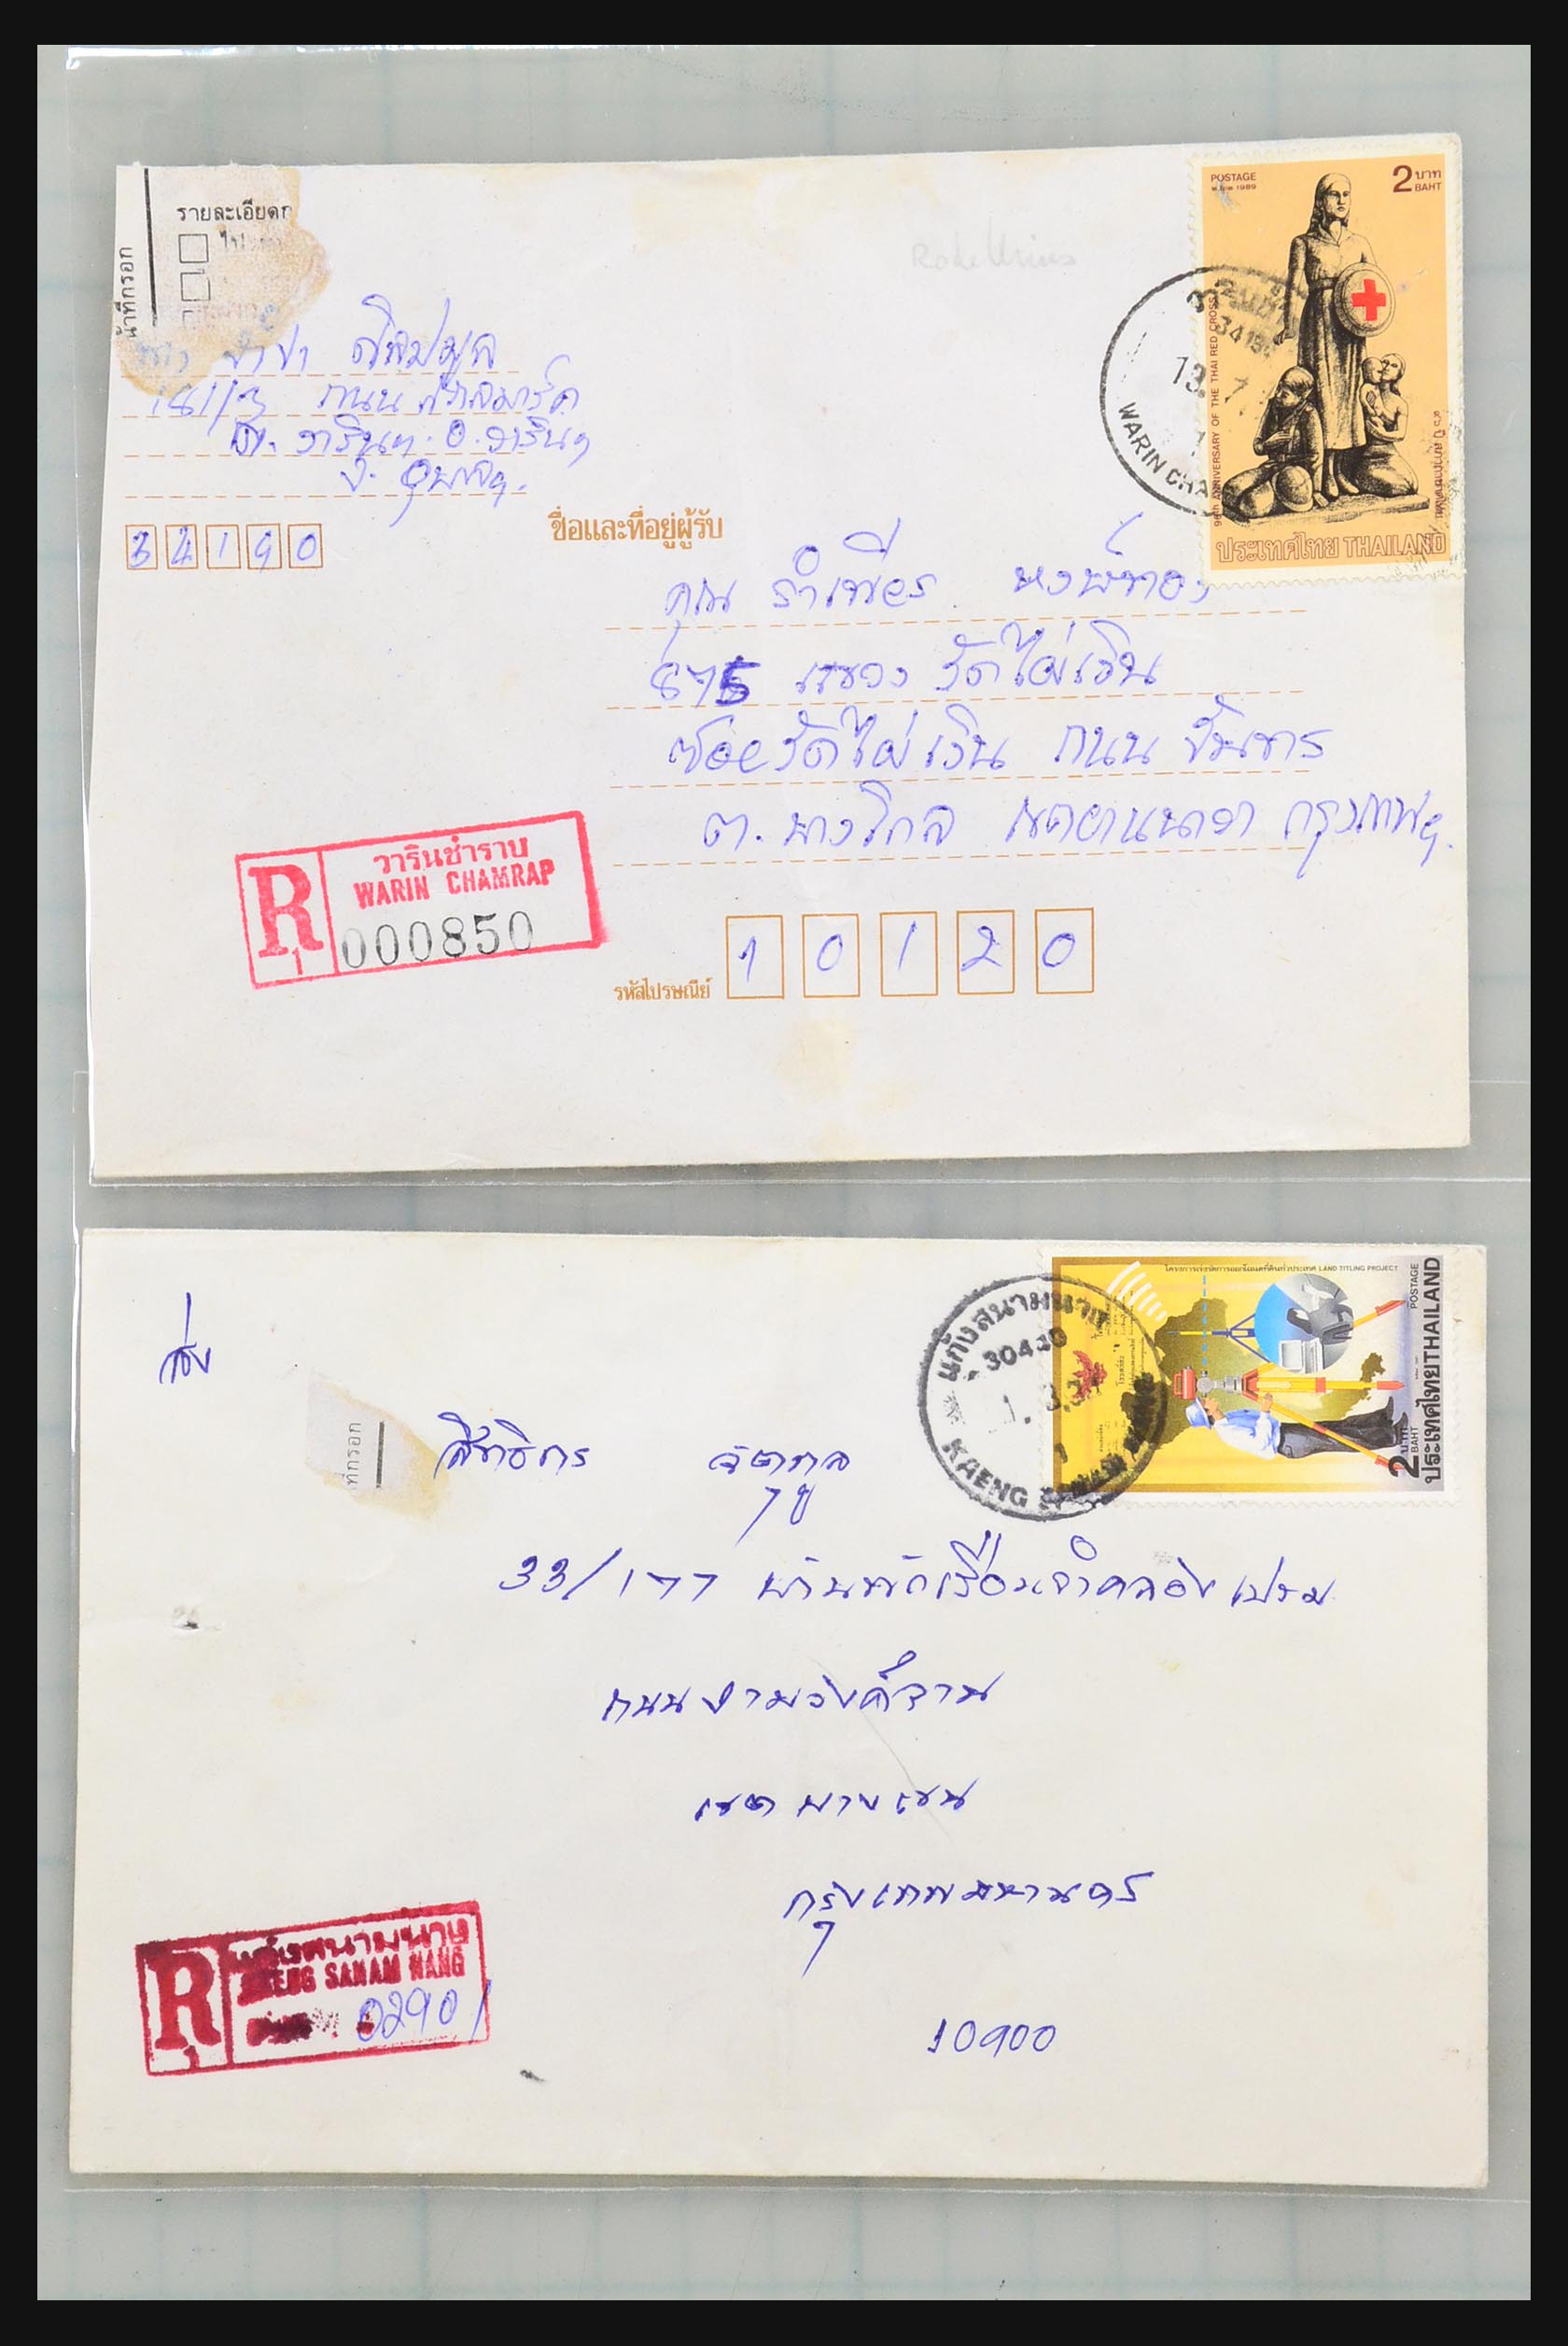 31355 033 - 31355 Azië brieven 1900-1980.